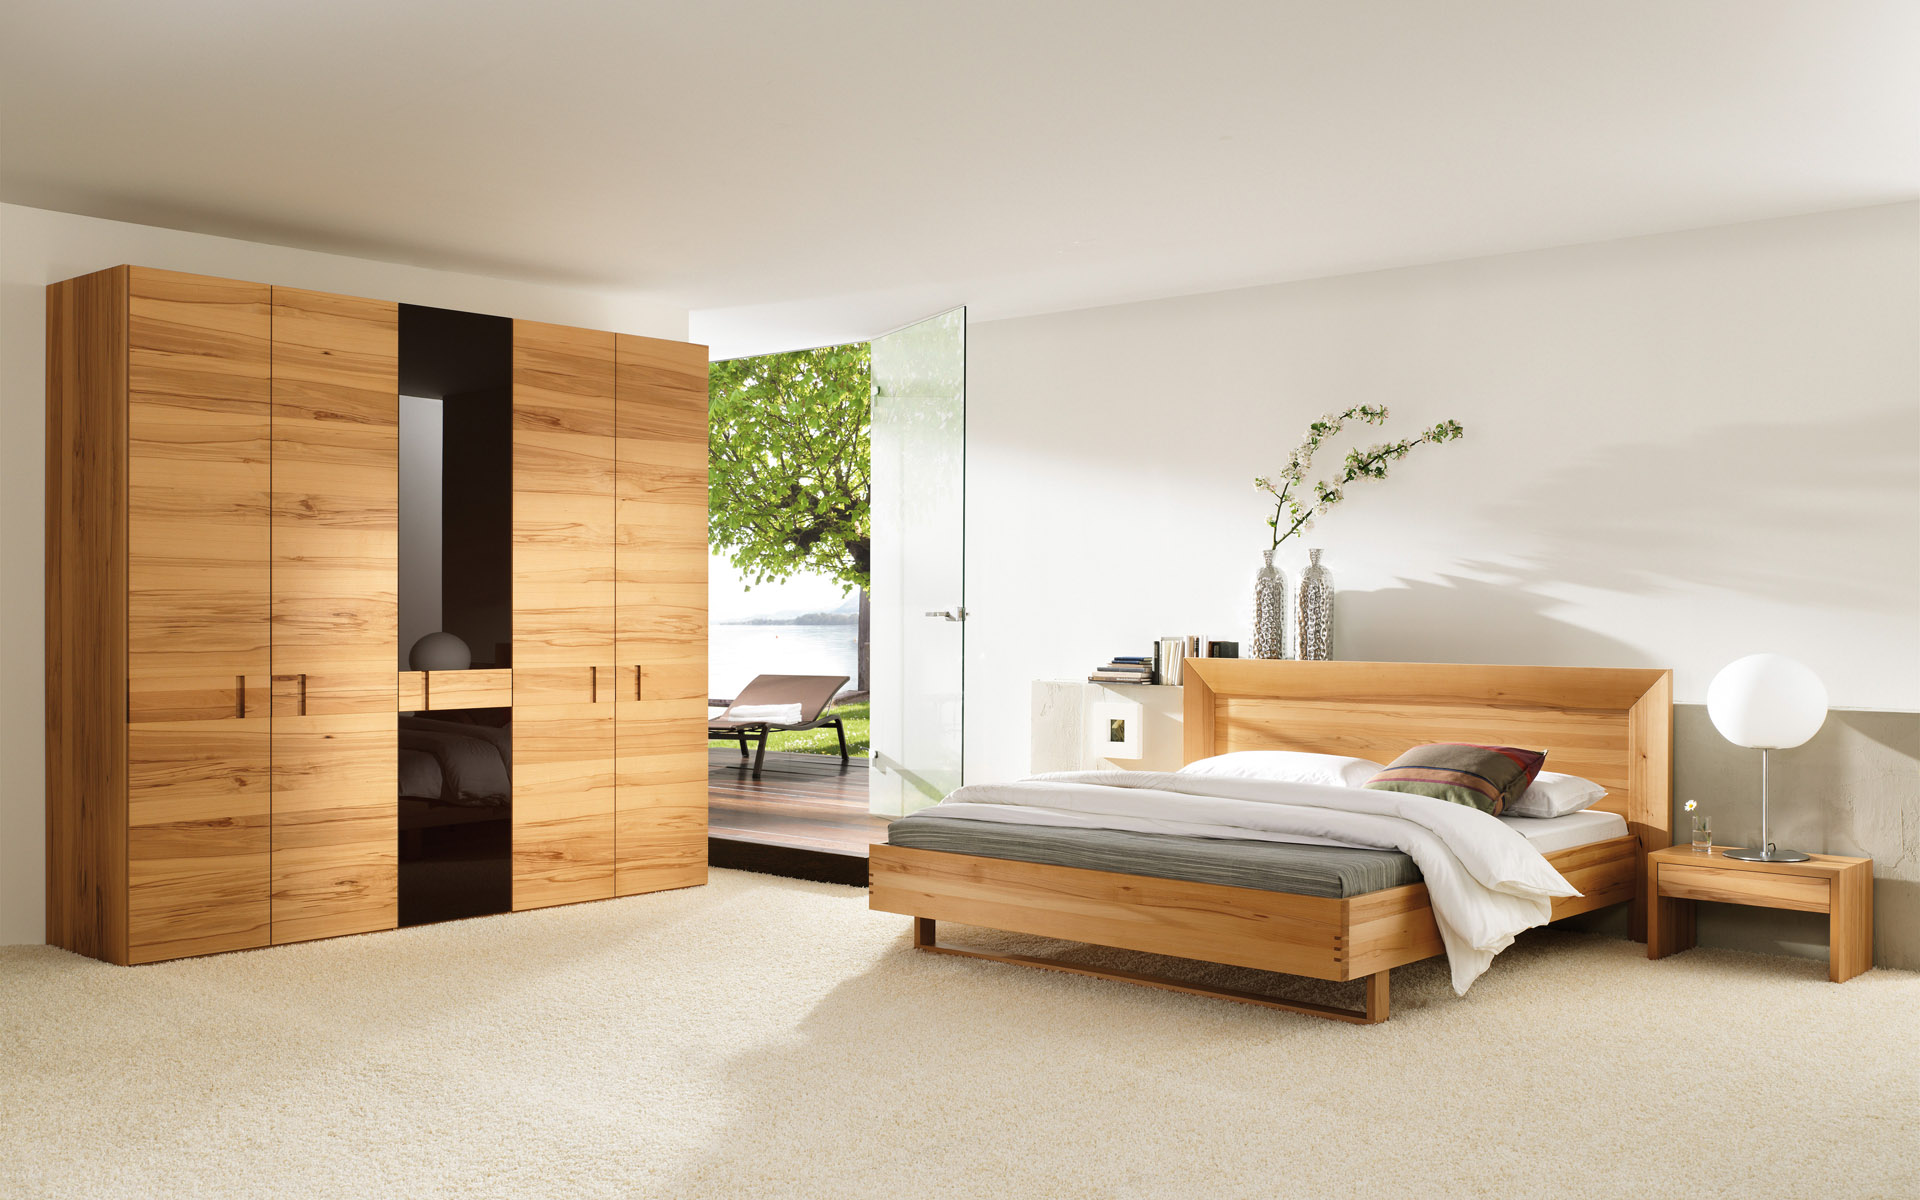 furniture wallpaper,bedroom,furniture,bed,room,interior design